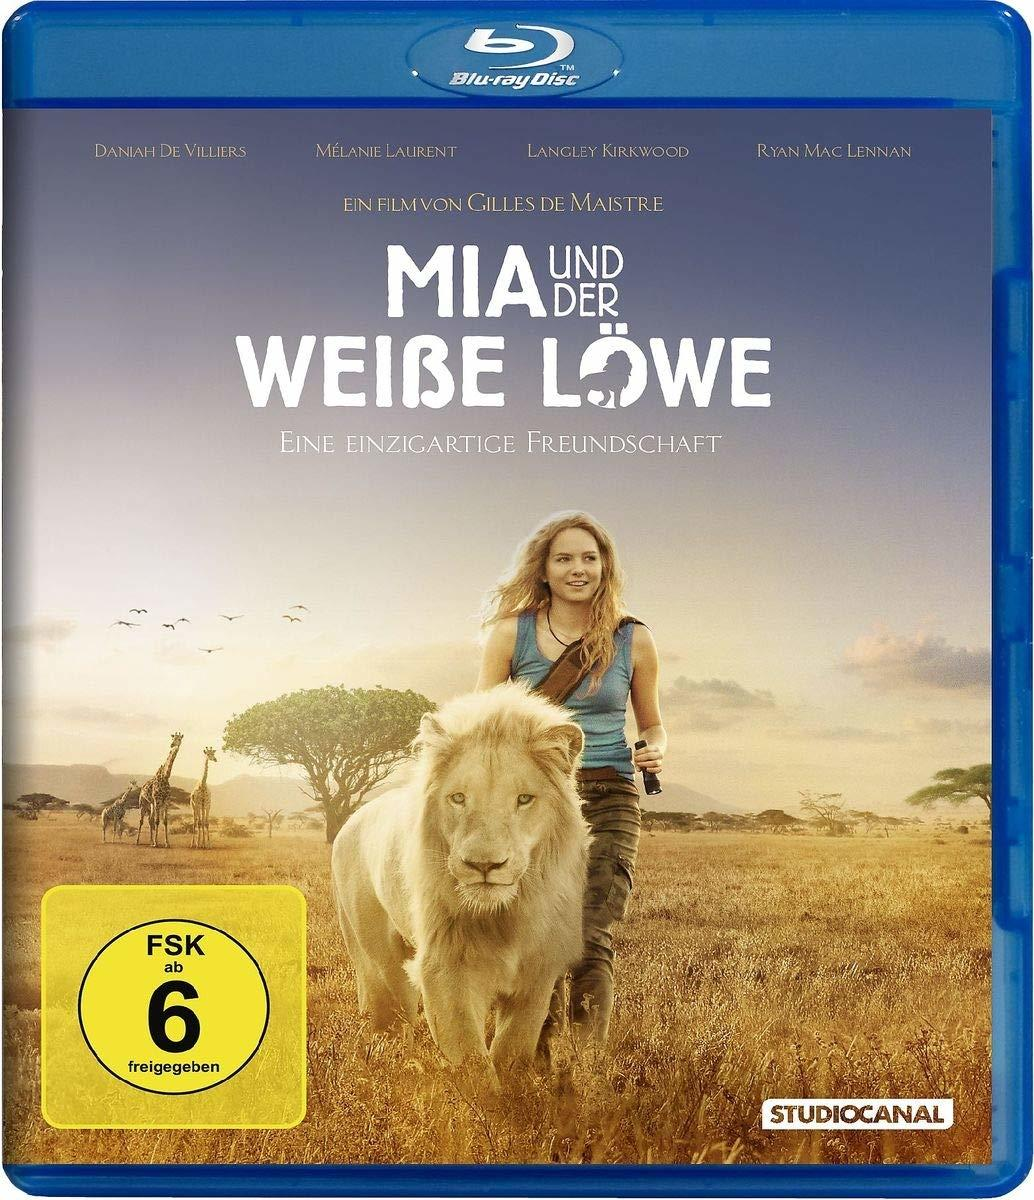 Mia und Blu-ray der Löwe weisse